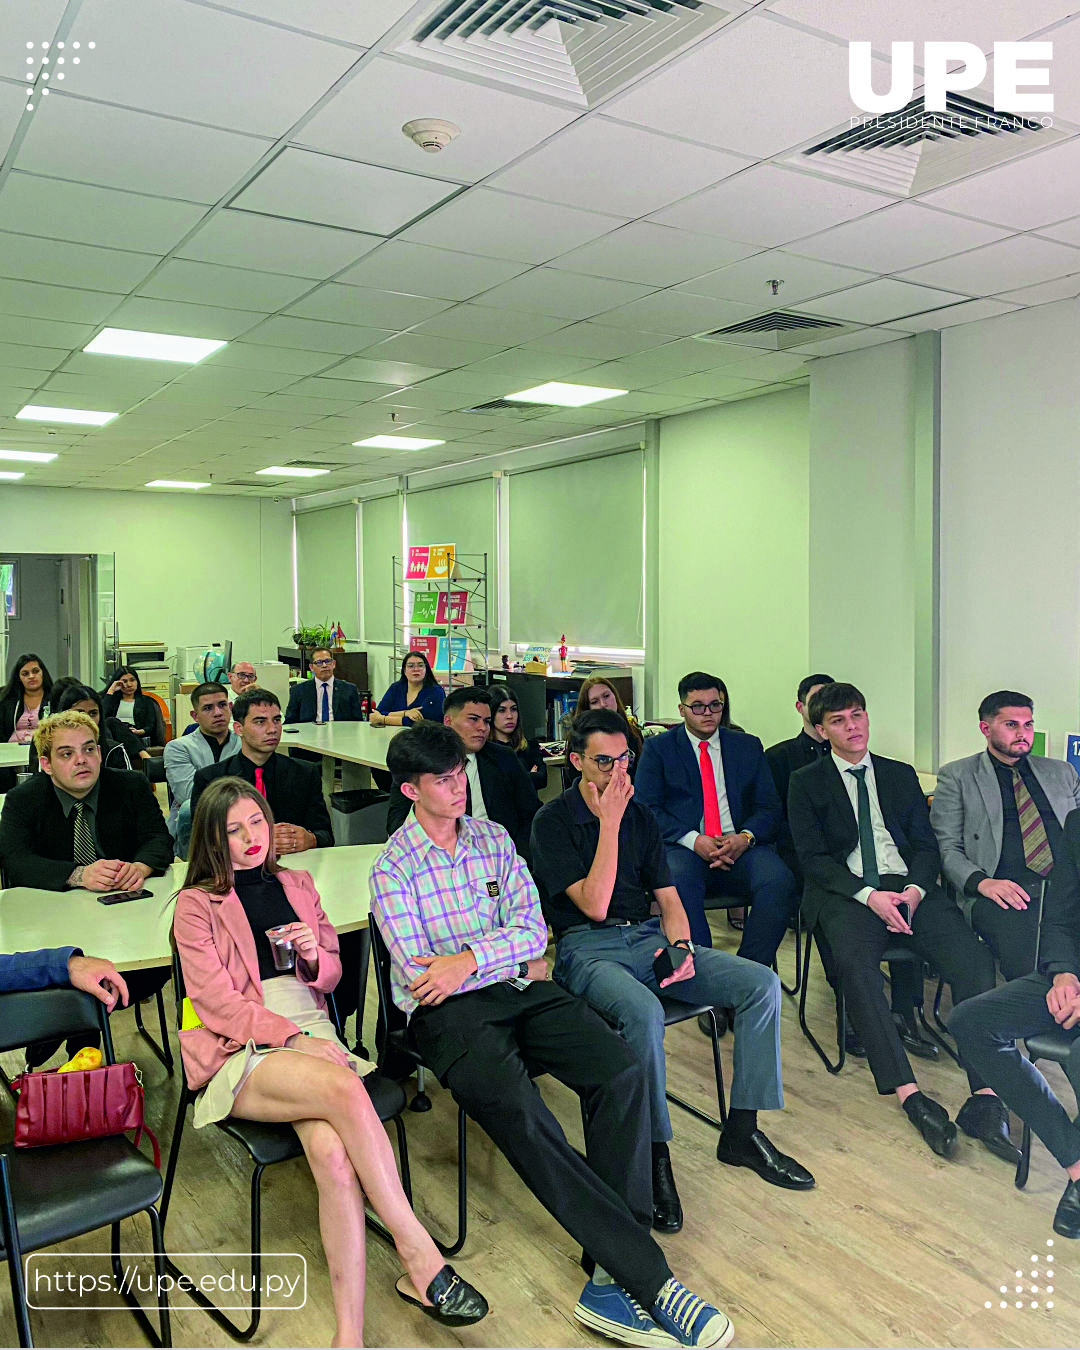 Proyecto de Extensión Universitaria: Visita a la oficina de la ONU - Asunción, Paraguay